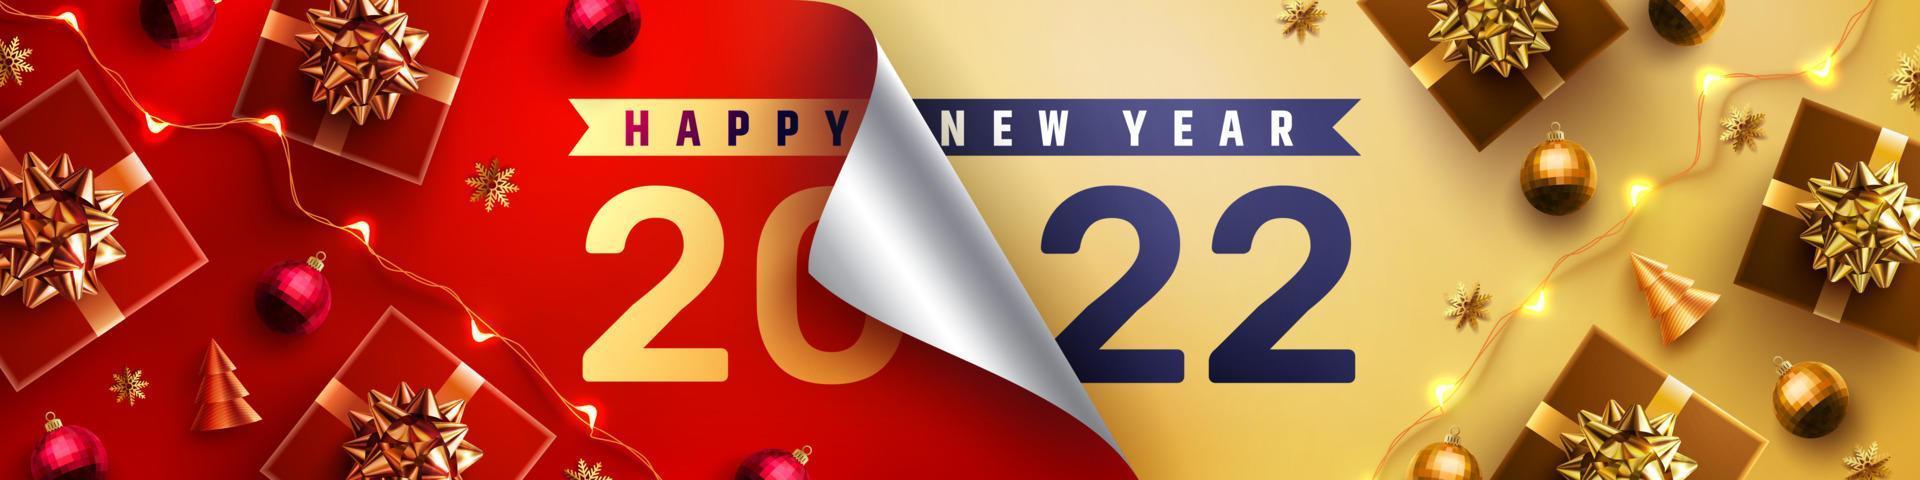 Cartel de promoción de feliz año nuevo 2022 o pancarta con papel de regalo abierto y caja de regalo en colores rojo y dorado.Cambio o abierto al concepto de año nuevo 2022.Plantilla de promoción y compras para el año nuevo 2022. vector